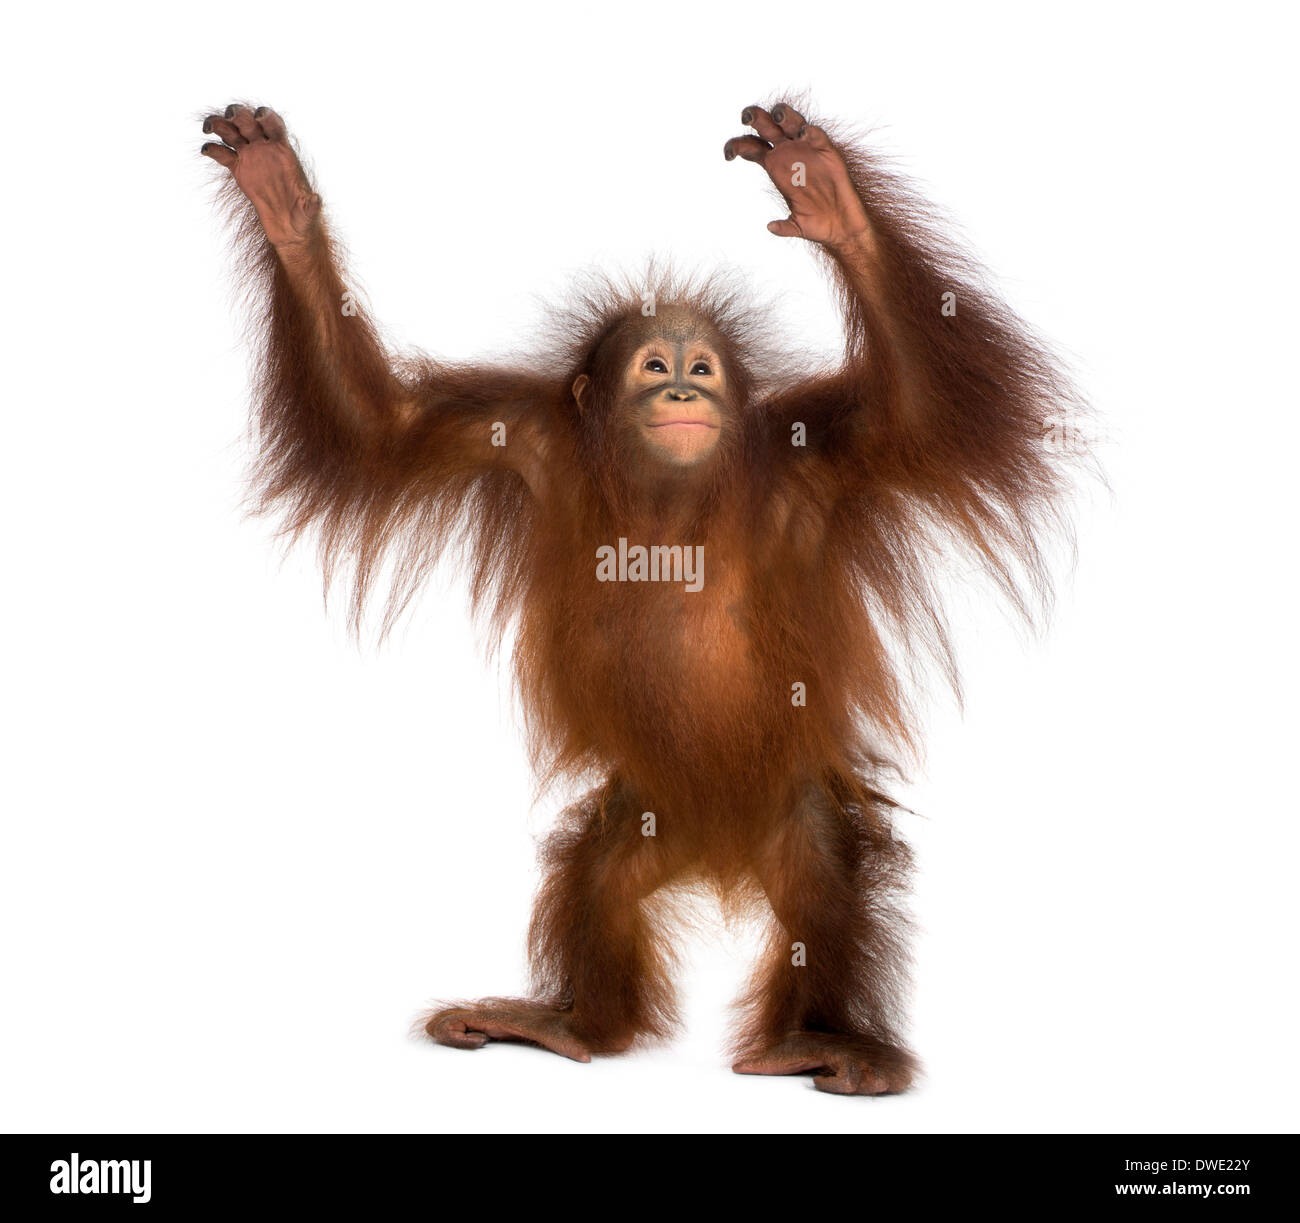 Les jeunes orang-outan comité permanent, pour atteindre le haut, Pongo pygmaeus, 18 mois, contre fond blanc Banque D'Images